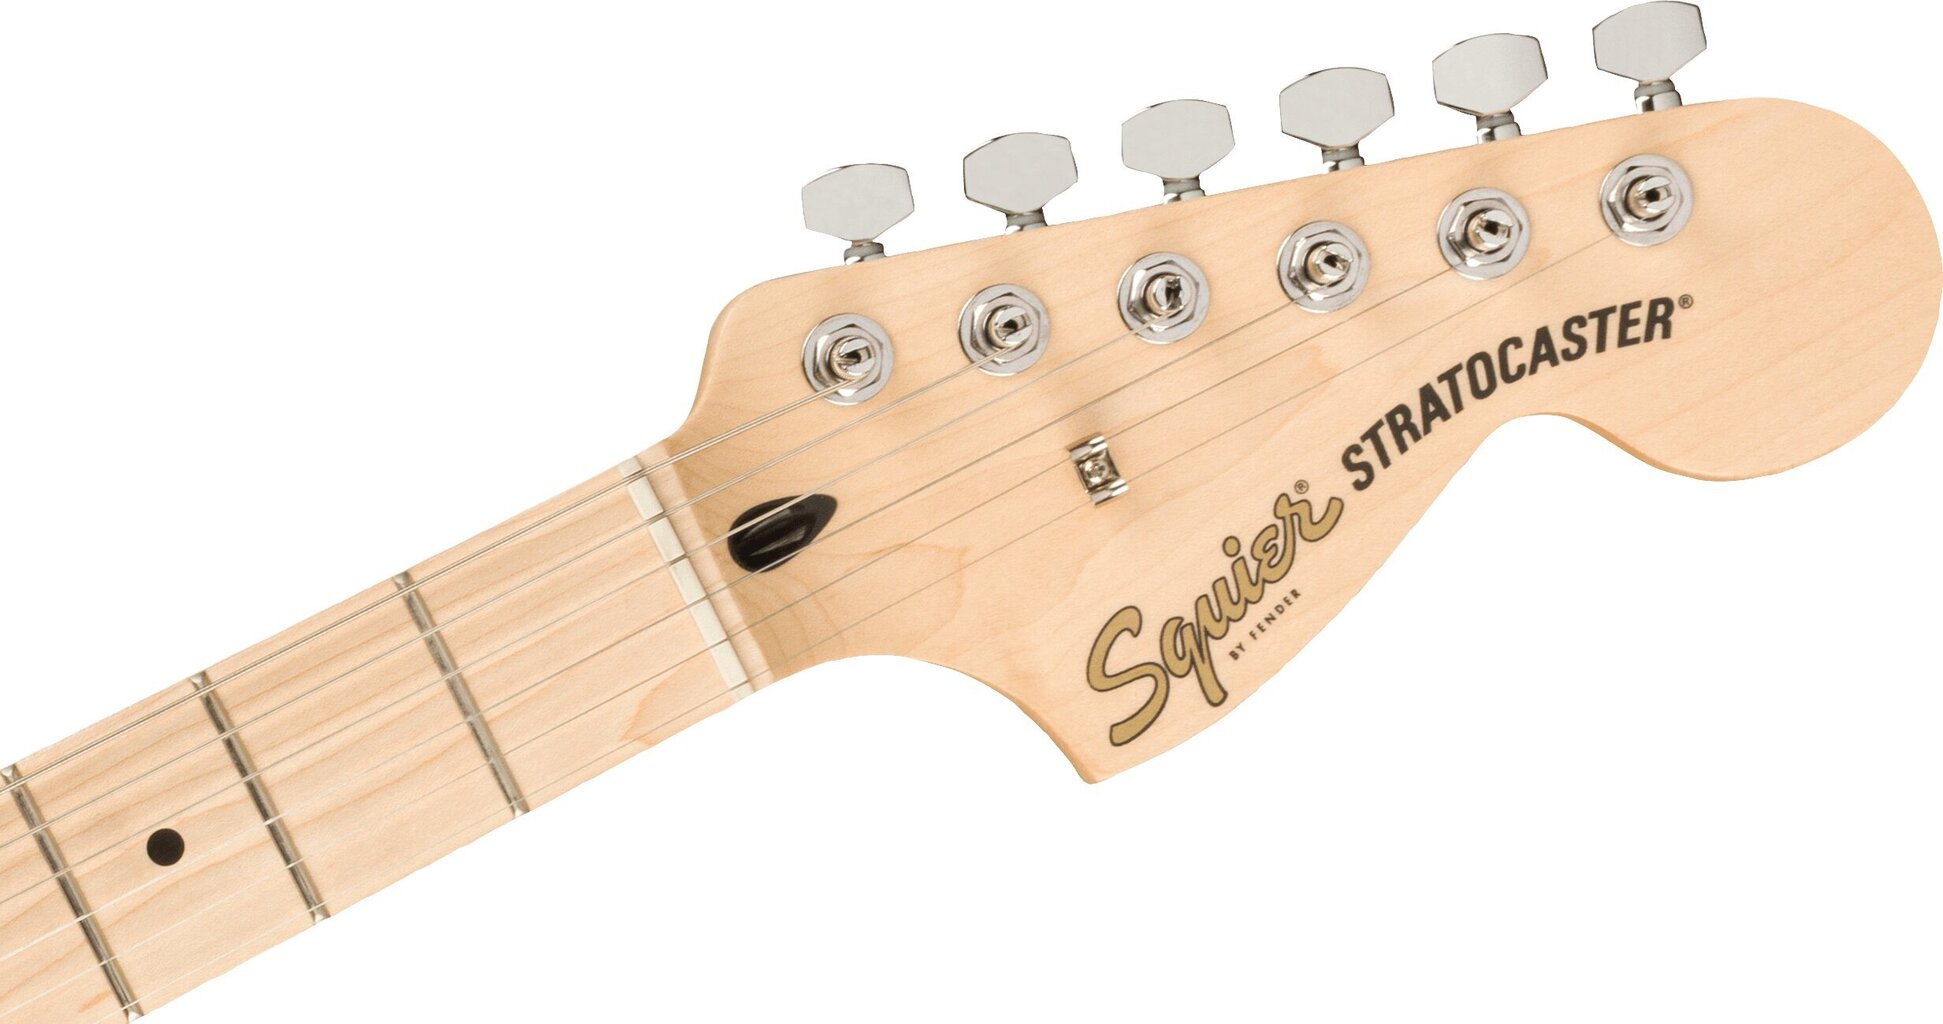 Elektriskās ģitāras komplekts Fender Affinity Strat HSSsu+ Frontman 15G cena un informācija | Ģitāras | 220.lv